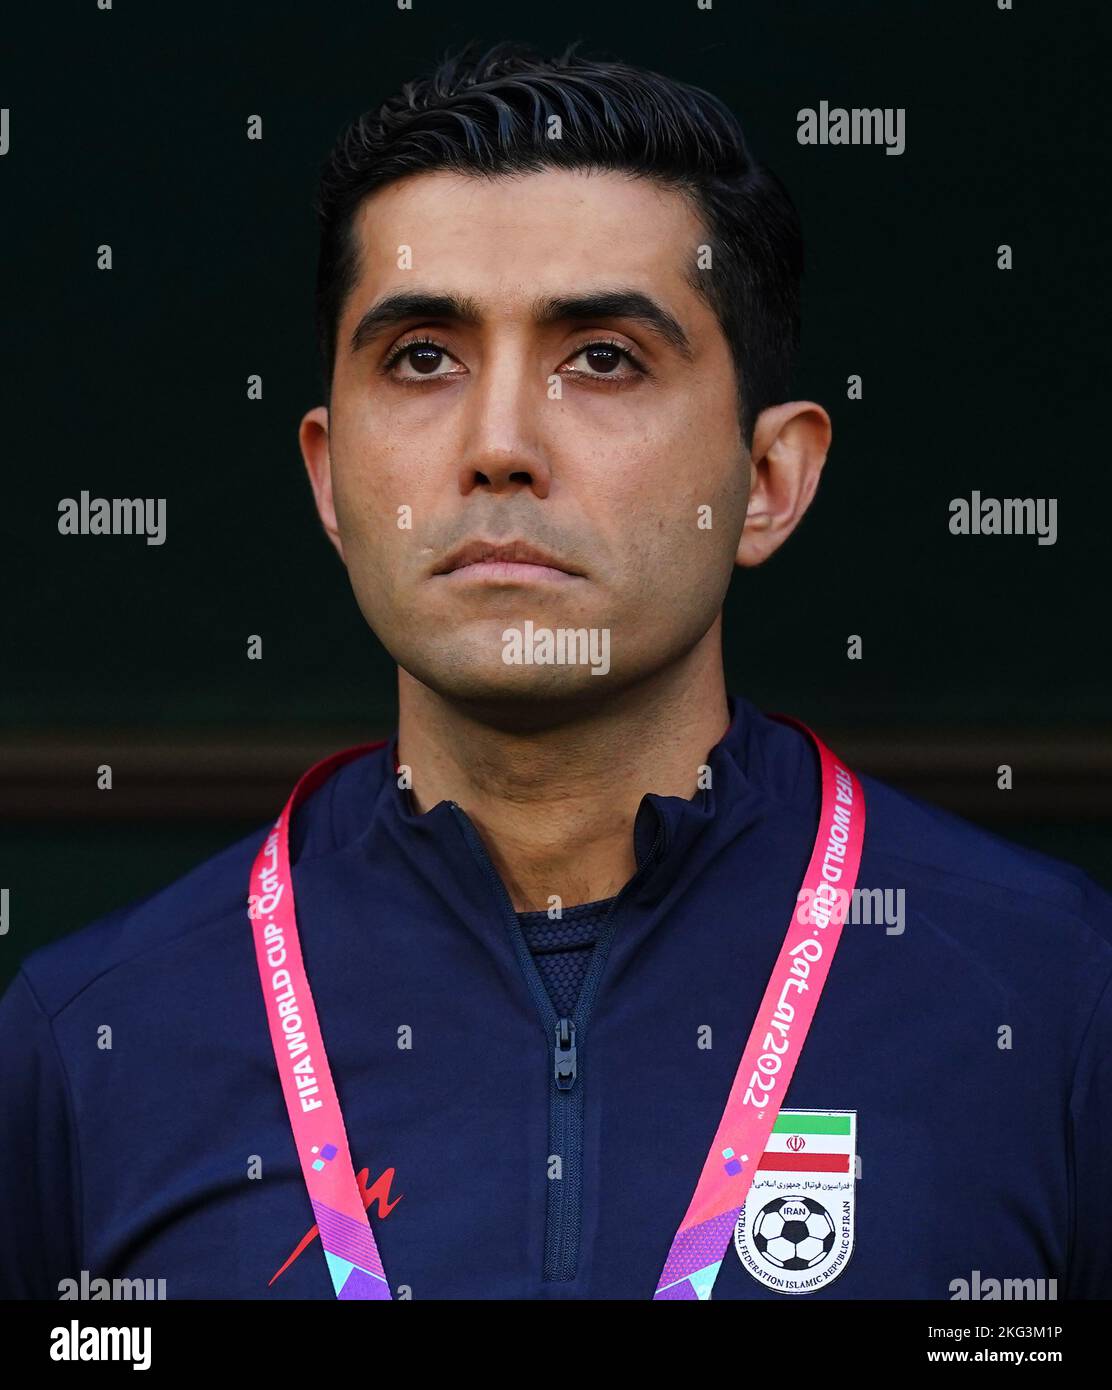 Der iranische Übersetzer Aryan Ghasemi während des Spiels der FIFA-Weltmeisterschaft der Gruppe B im Khalifa International Stadium, Doha. Bilddatum: Montag, 21. November 2022. Stockfoto